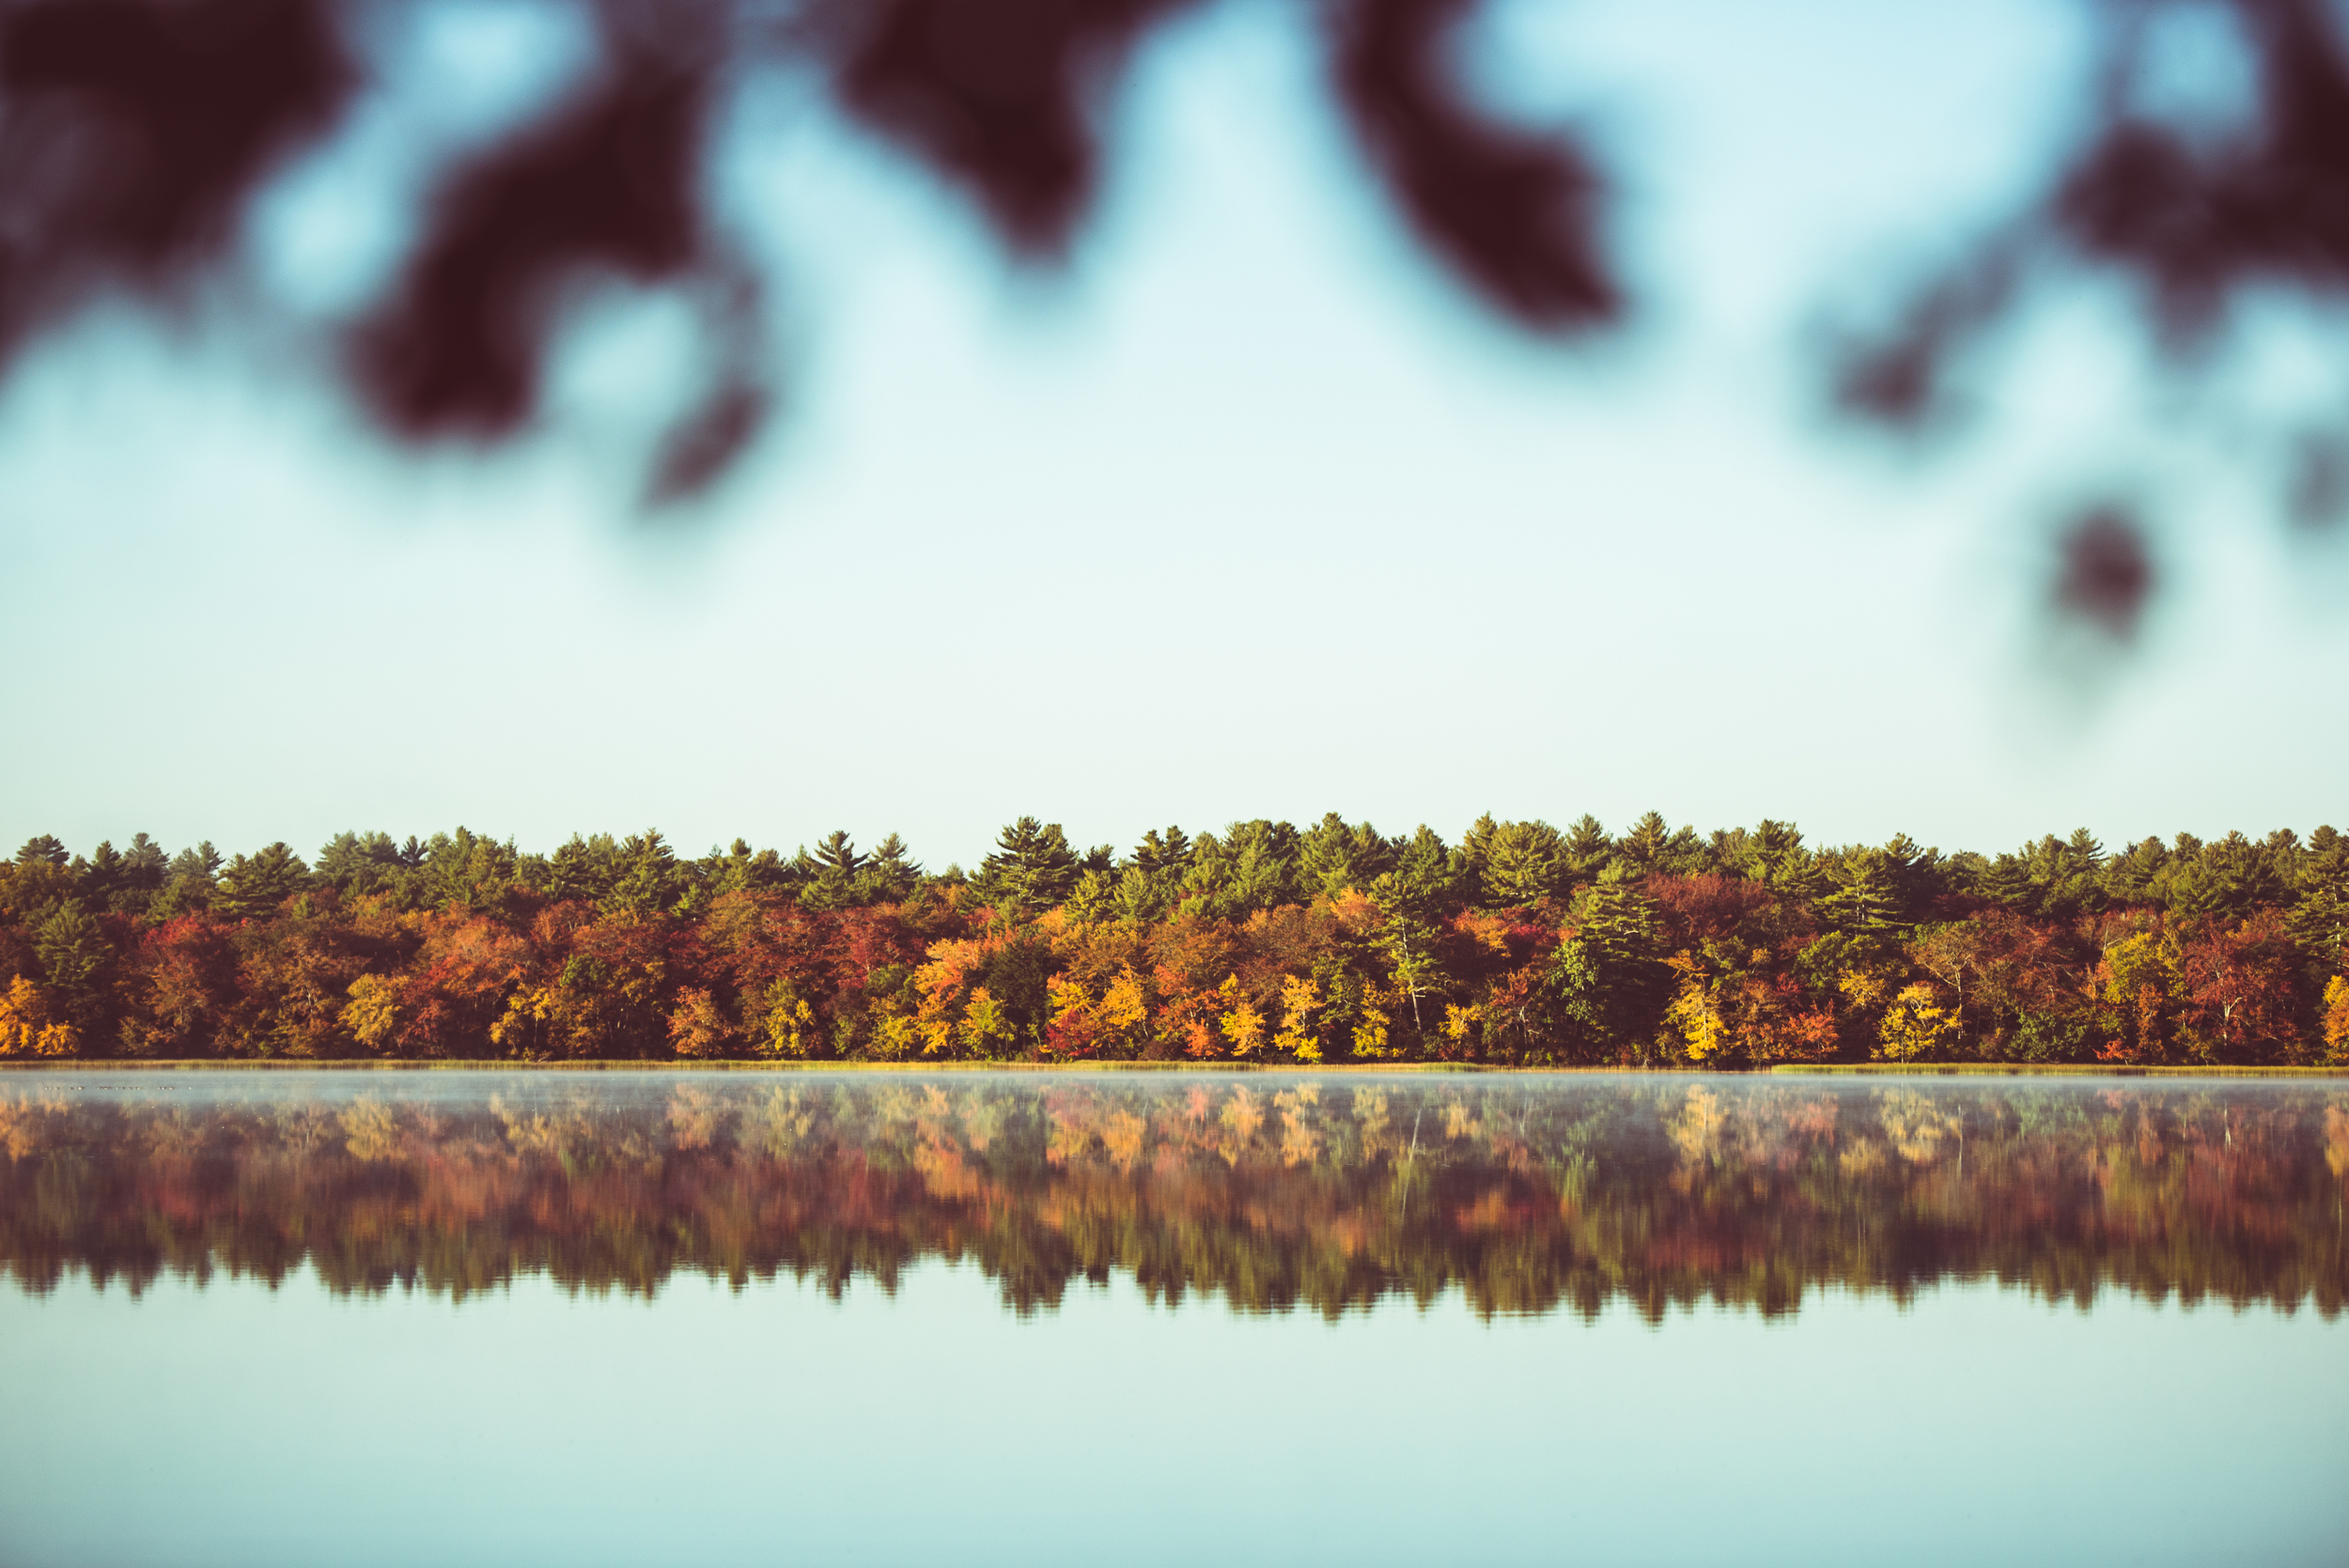 Lakeside Fall Foliage in Rhode Island